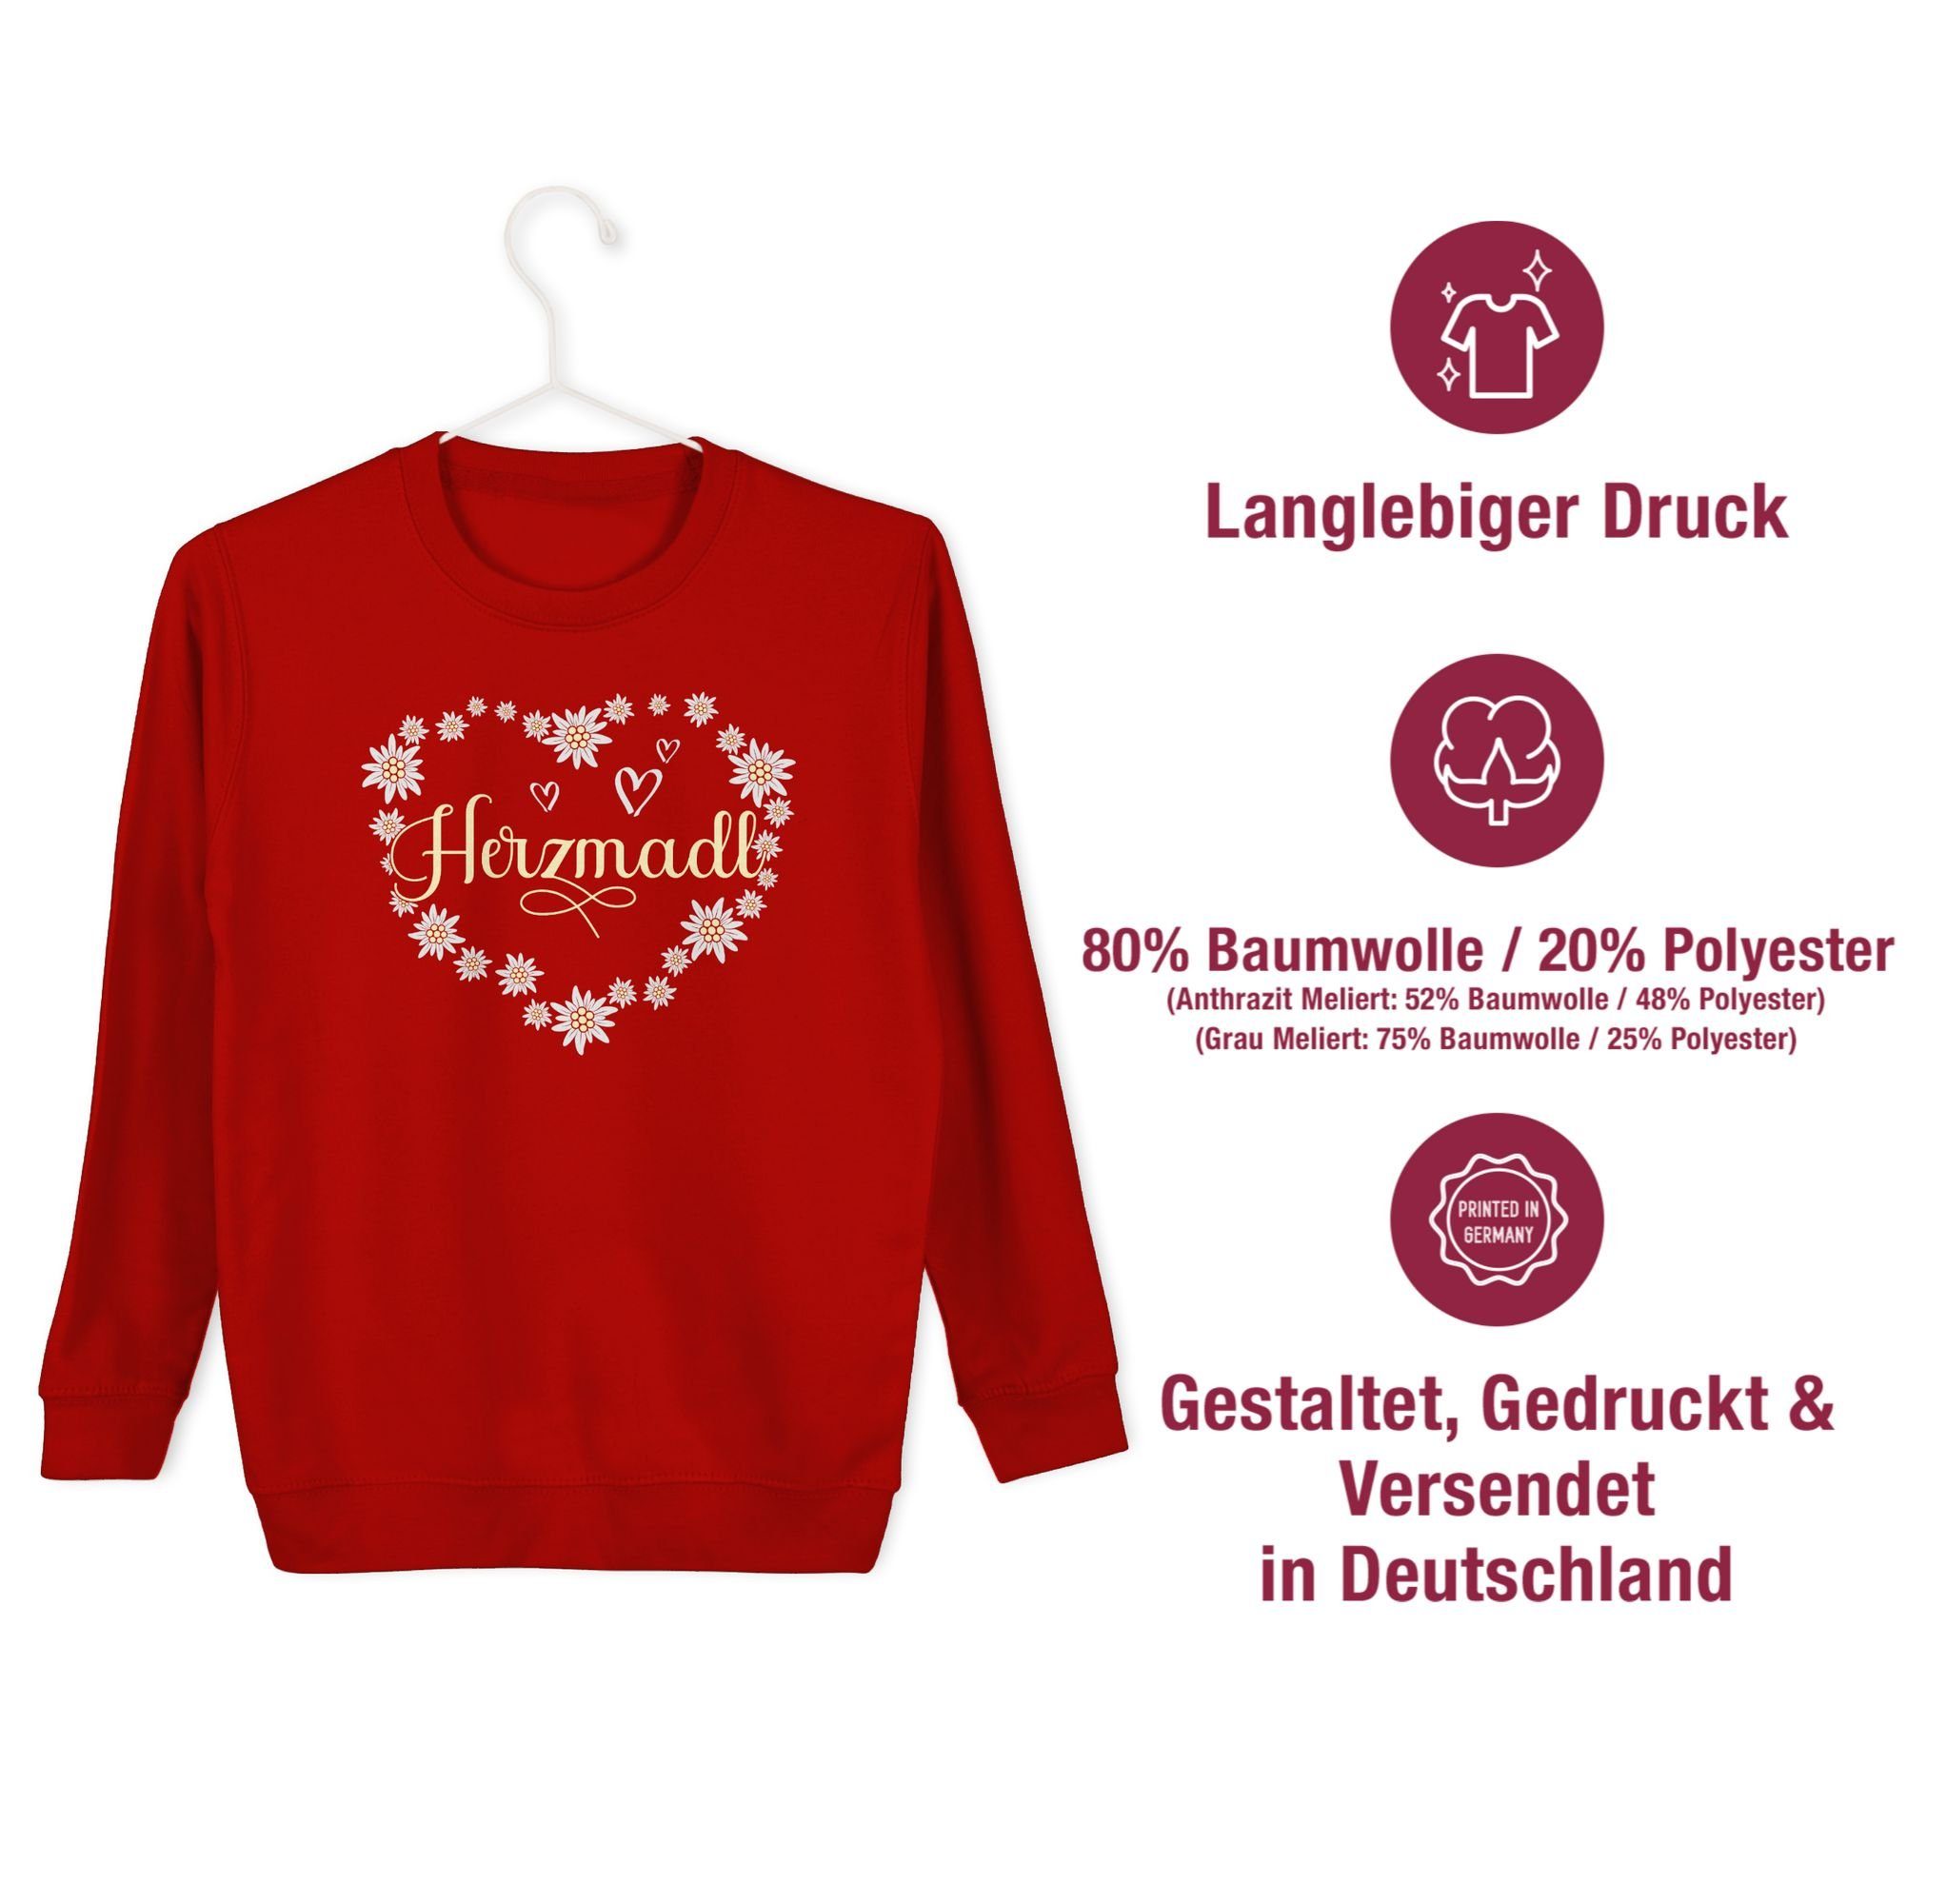 Shirtracer Sweatshirt für Outfit Mädel Oktoberfest Madel Mode Madl Rot Herzmadl Kinder 3